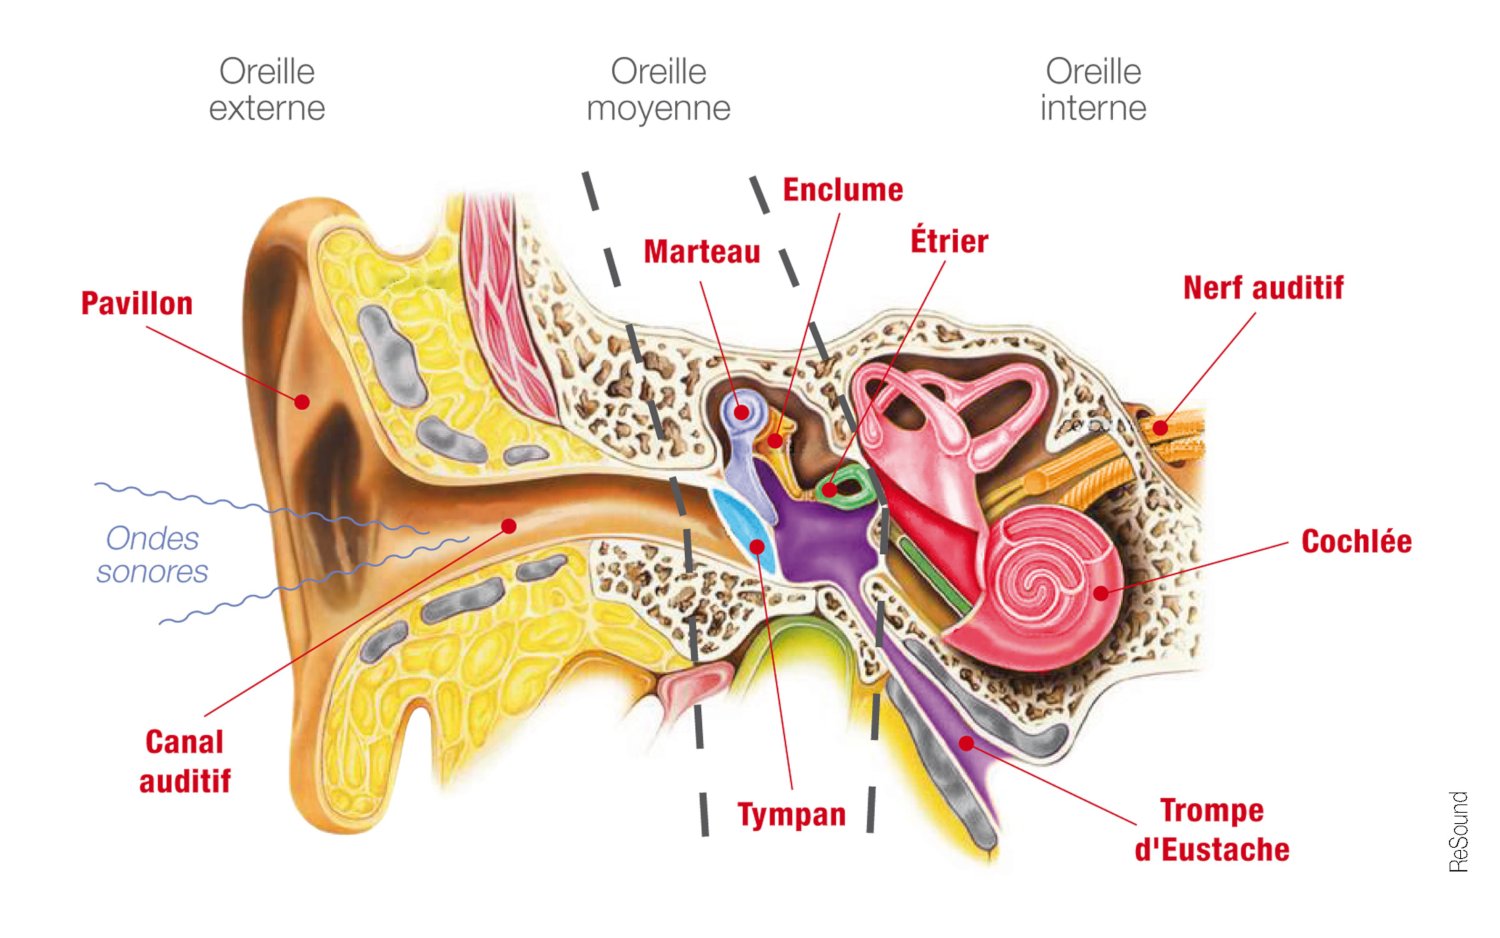  schéma de l'oreille interne